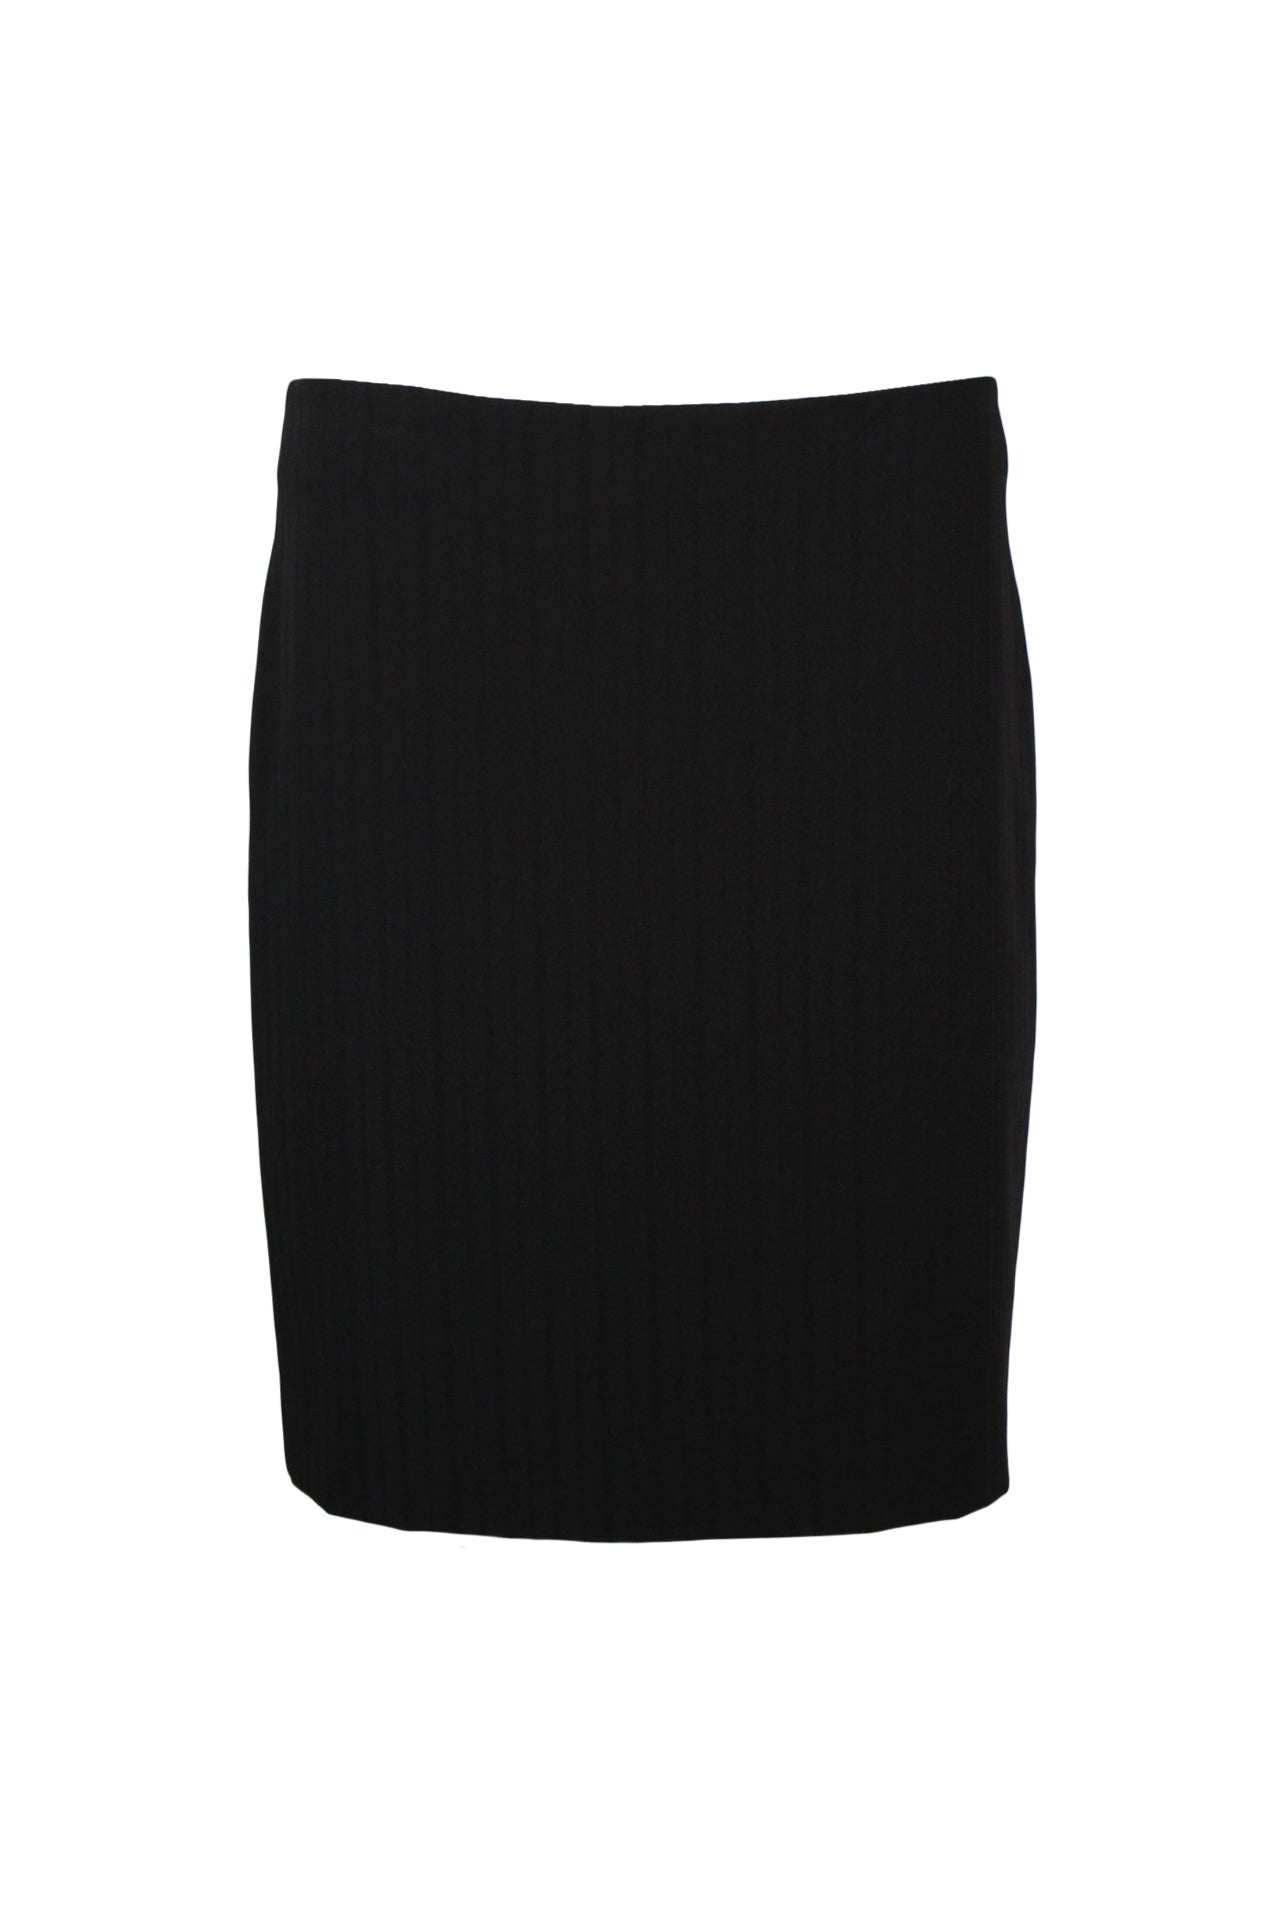 black knee length skirt